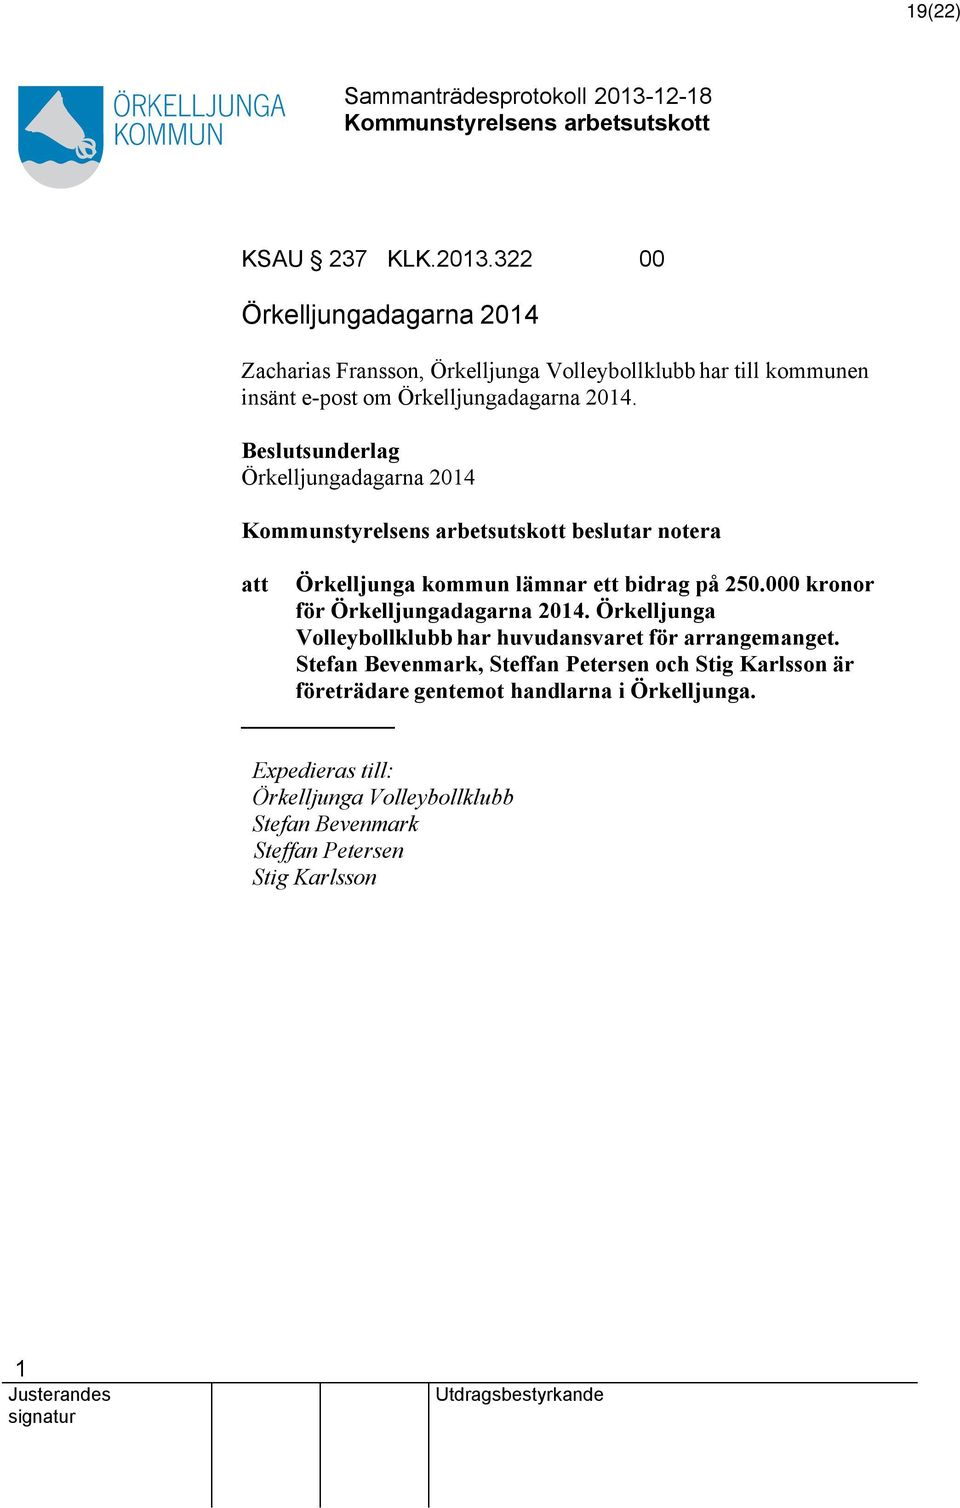 Beslutsunderlag Örkelljungadagarna 204 beslutar notera Örkelljunga kommun lämnar ett bidrag på 250.000 kronor för Örkelljungadagarna 204.